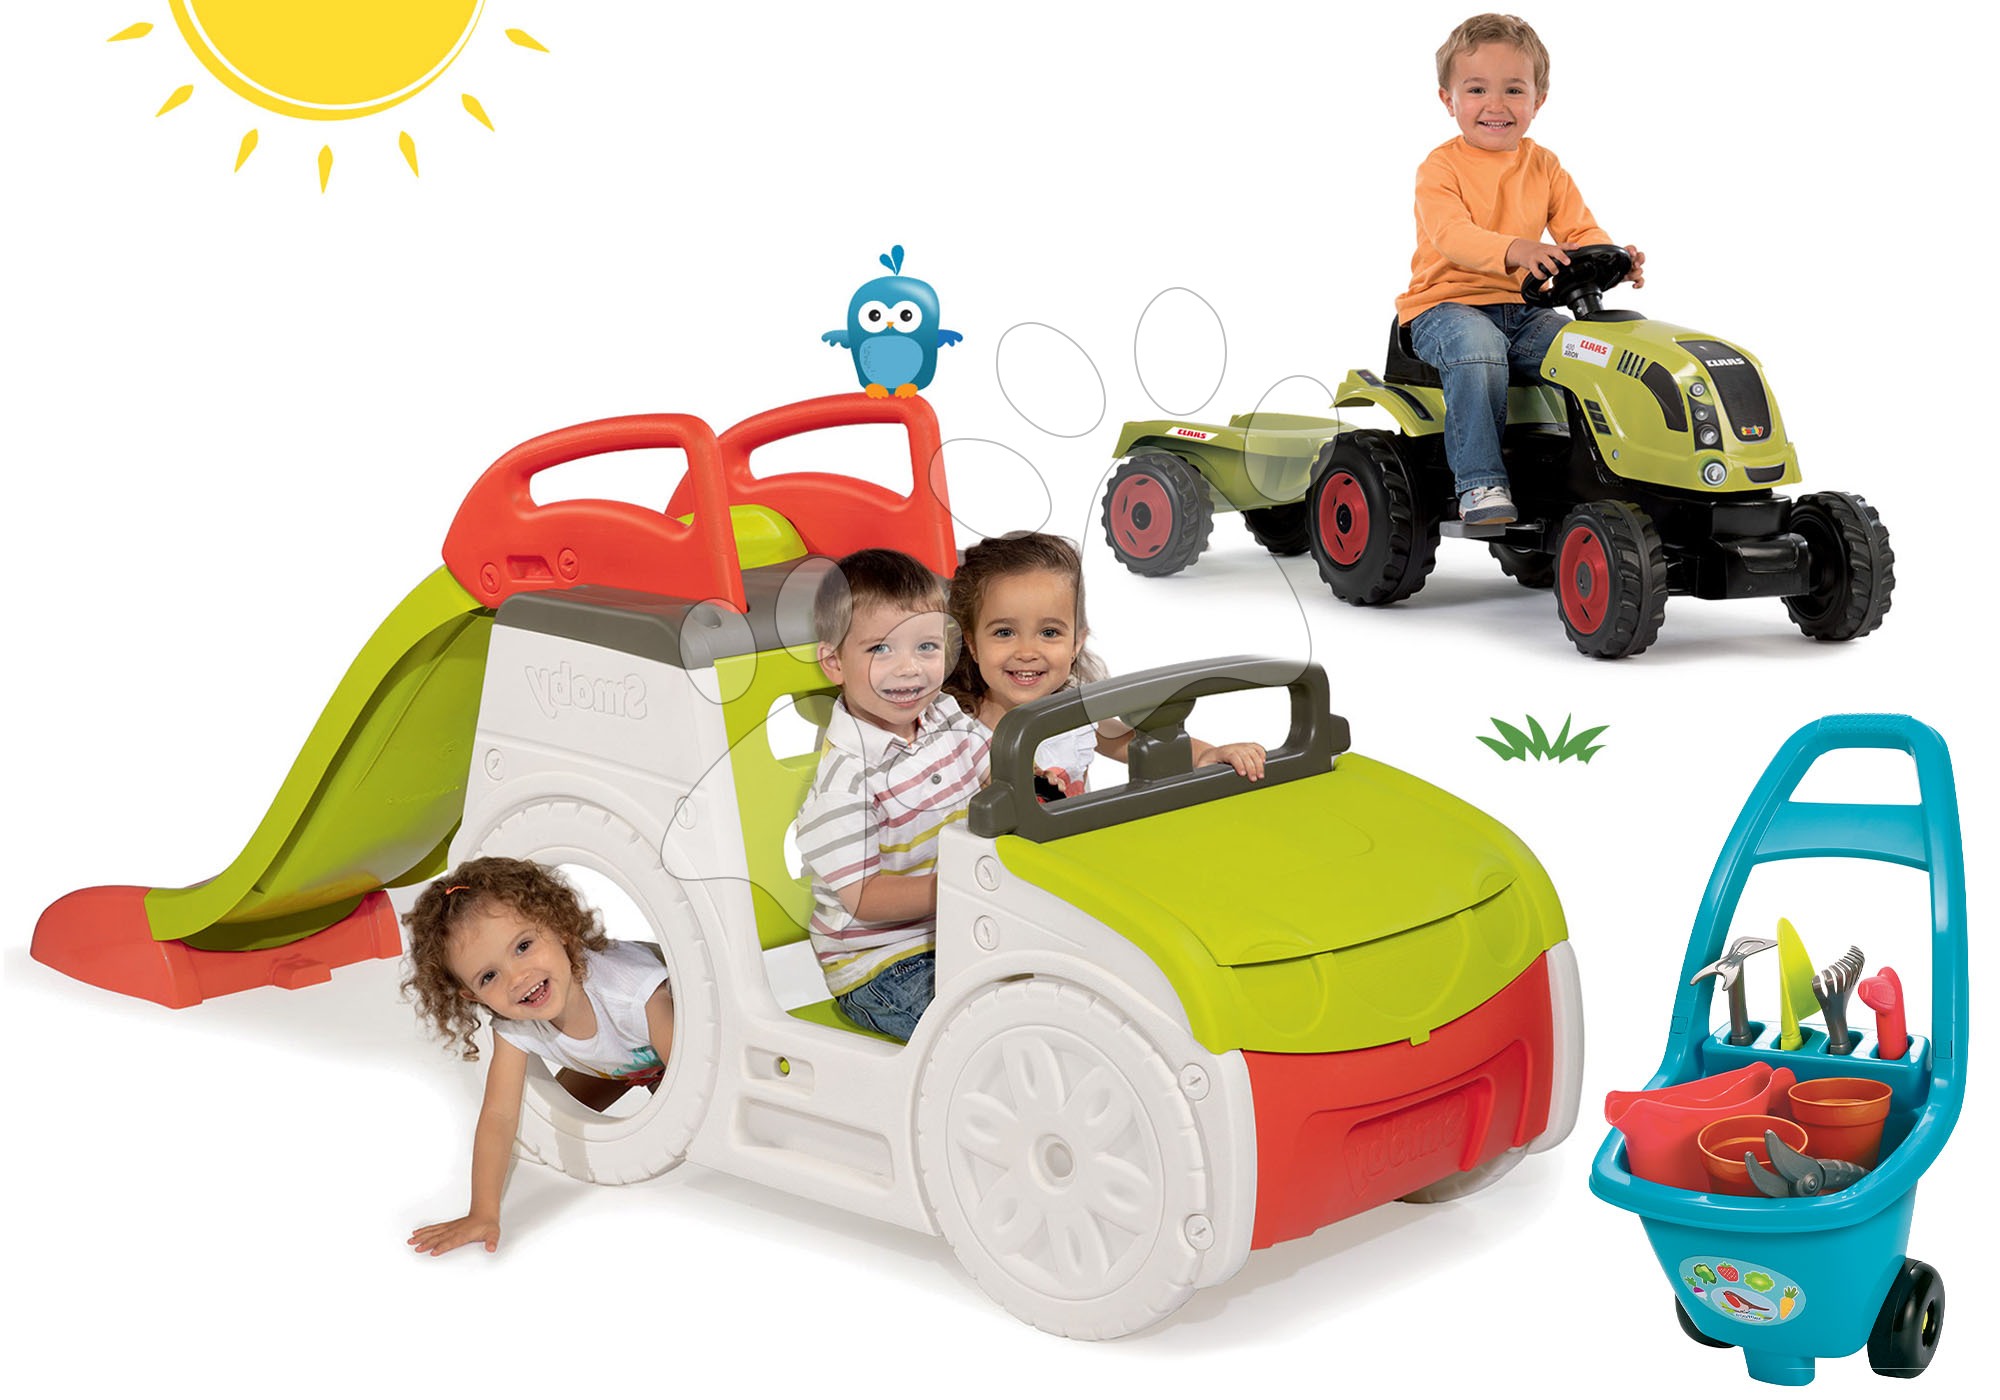 Prolézačky sety - Set prolézačka Adventure Car Smoby se skluzavkou dlouhou 150 cm, traktor Claas Farmer XL a vozík pro zahradníka od 24 měsíců